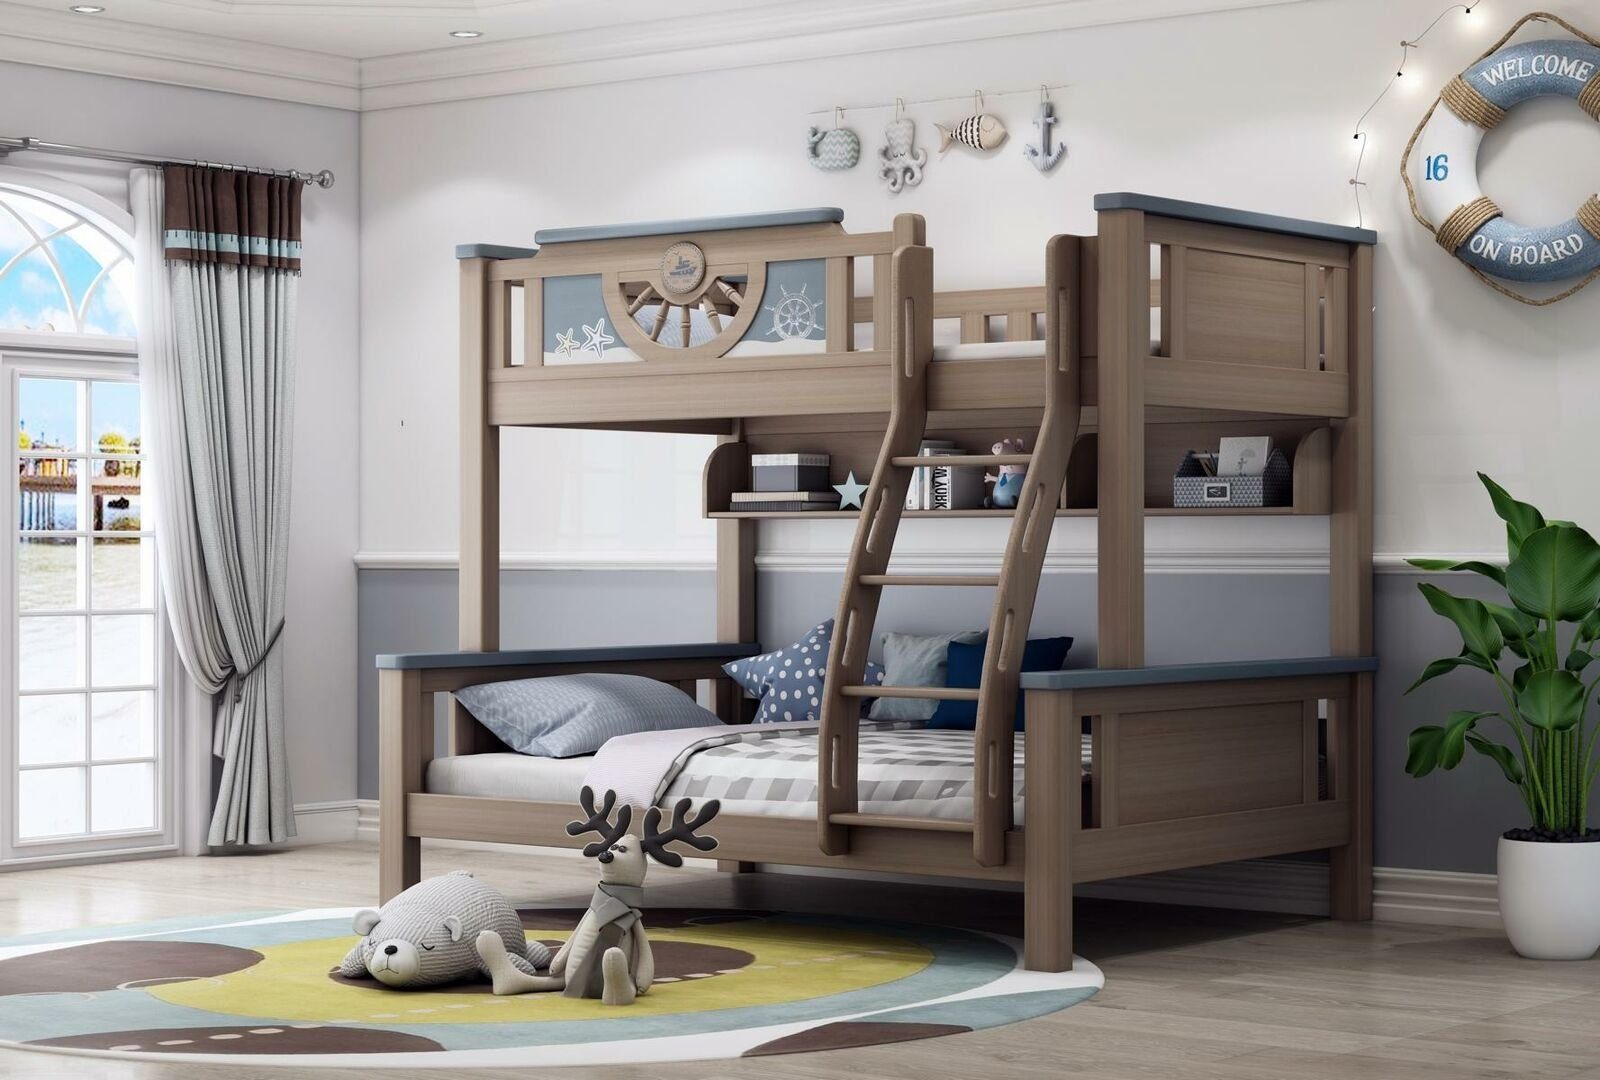 JVmoebel Bett Doppelstockbett Kinder Jugend Zimmer Möbel Holz Etagen Hoch Bett (Etagenbett)